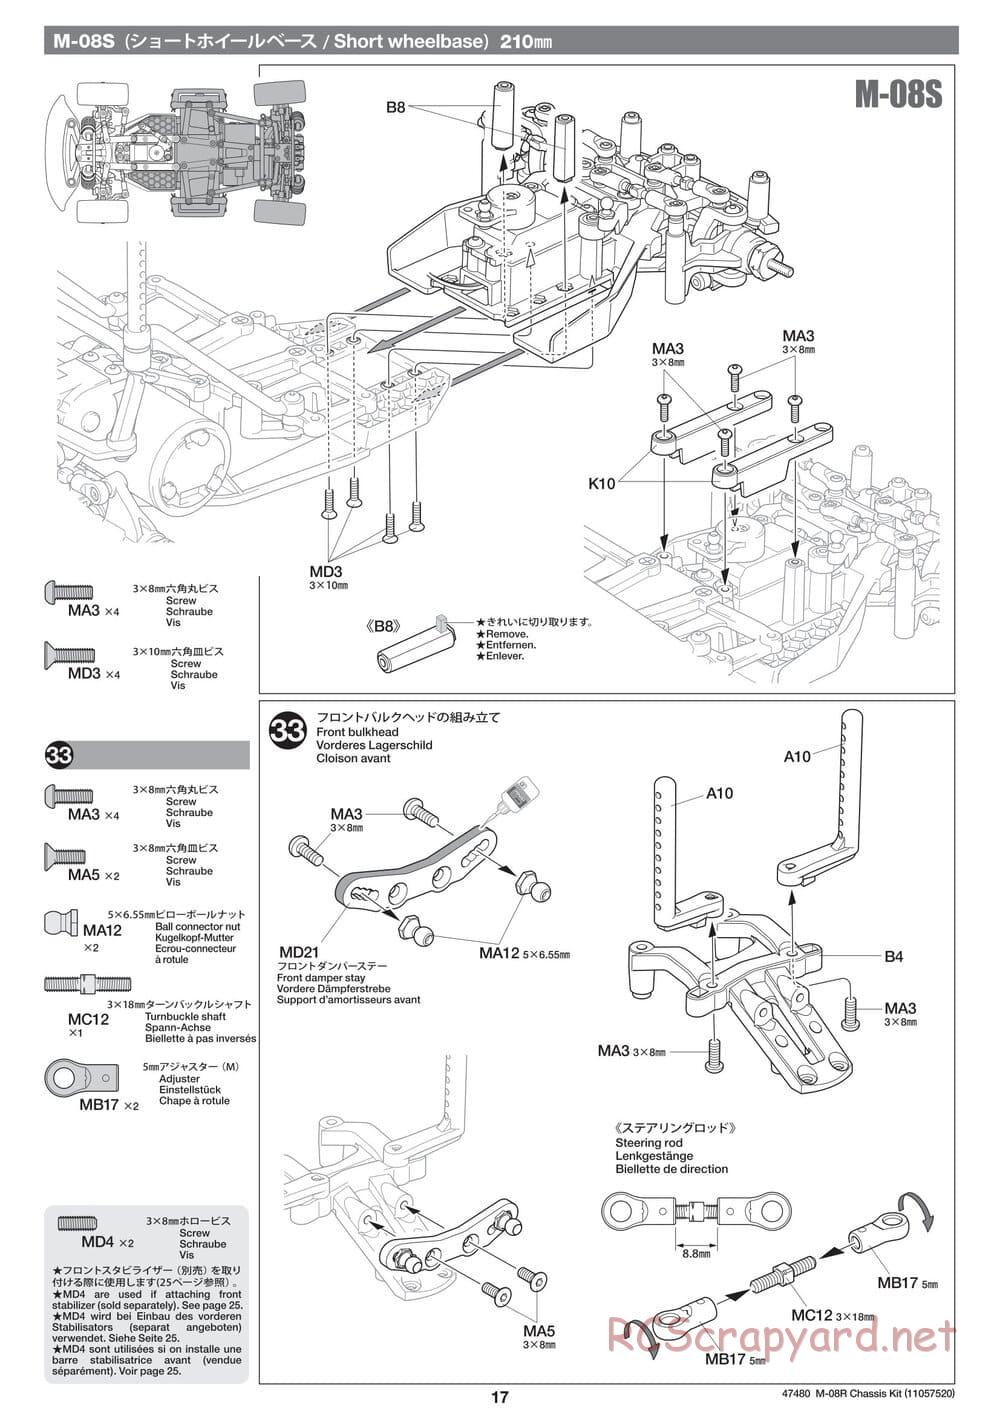 Tamiya - M-08R Chassis - Manual - Page 17